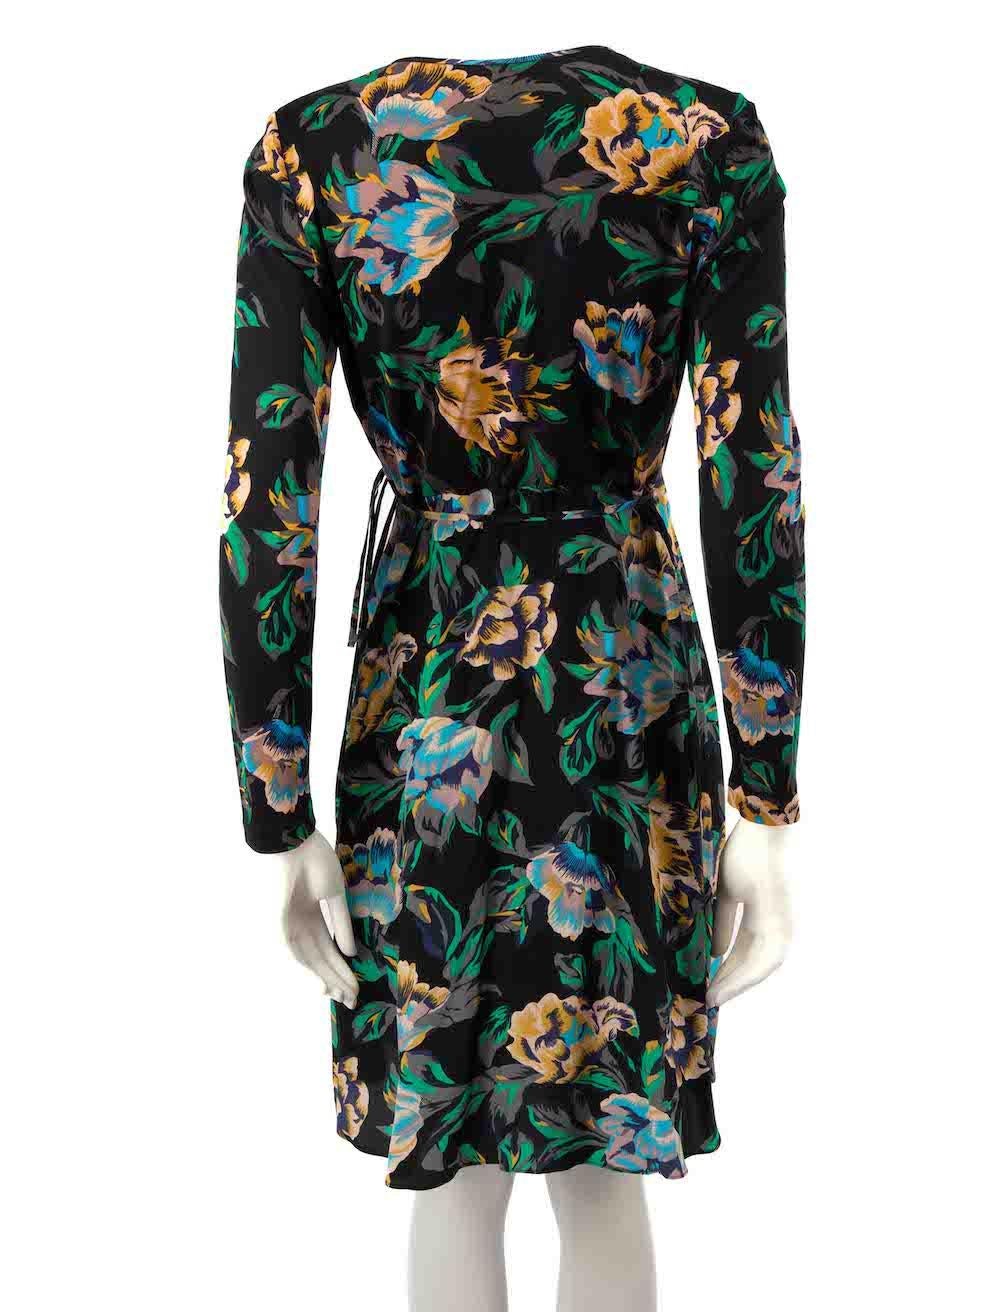 Diane Von Furstenberg Floral Waist Tie Wrap Dress Size M In Excellent Condition For Sale In London, GB